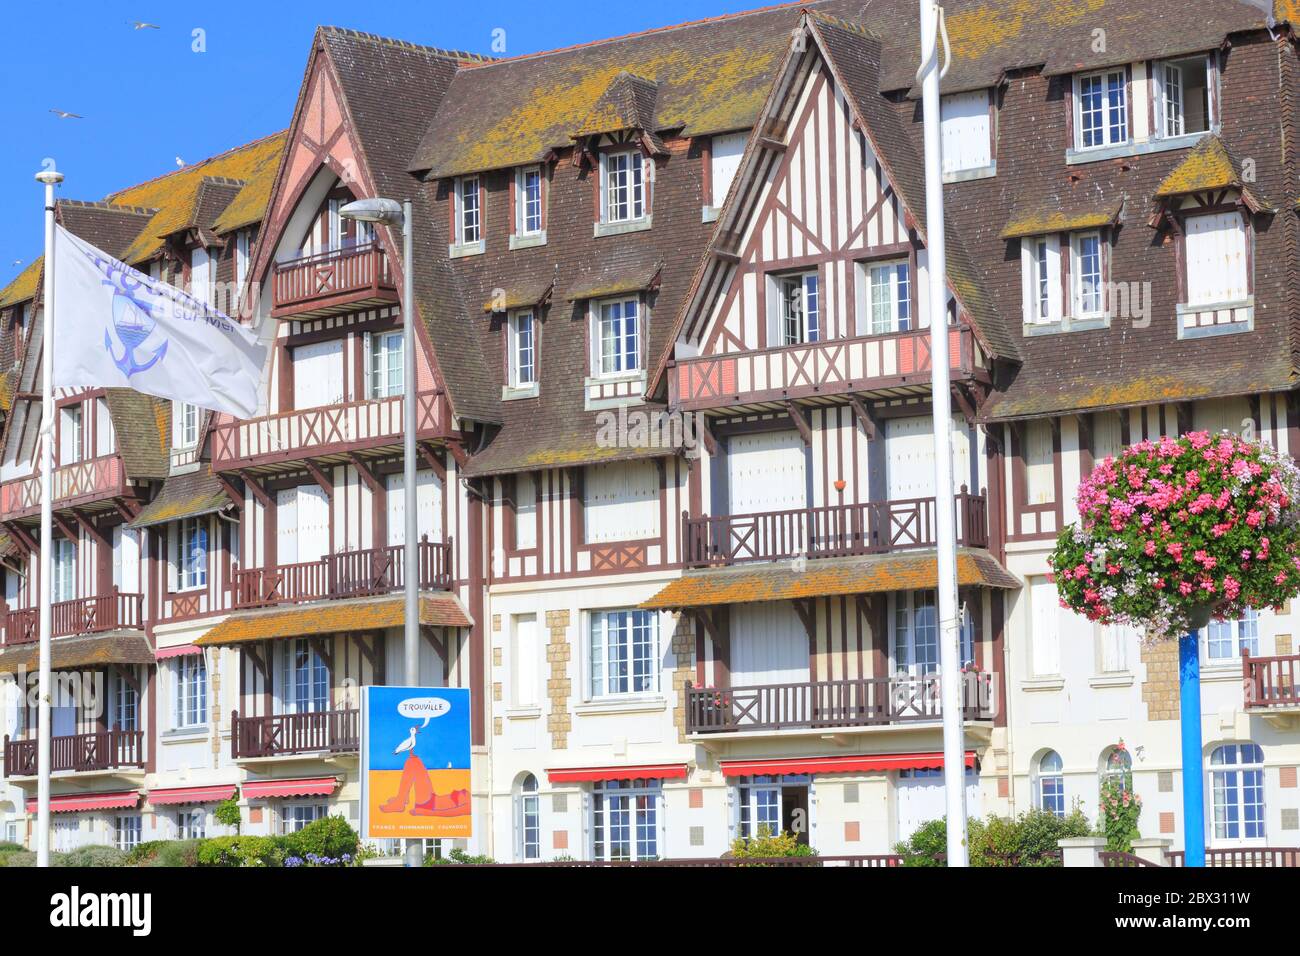 Frankreich, Calvados, Pays d'Auge, Trouville sur Mer, Les Planches Promenade Savignac, Gebäude am Wasser vom Anfang des 20. Jahrhunderts mit einem Plakat, das das Reiseziel von Raymond Savignac bewirbt Stockfoto